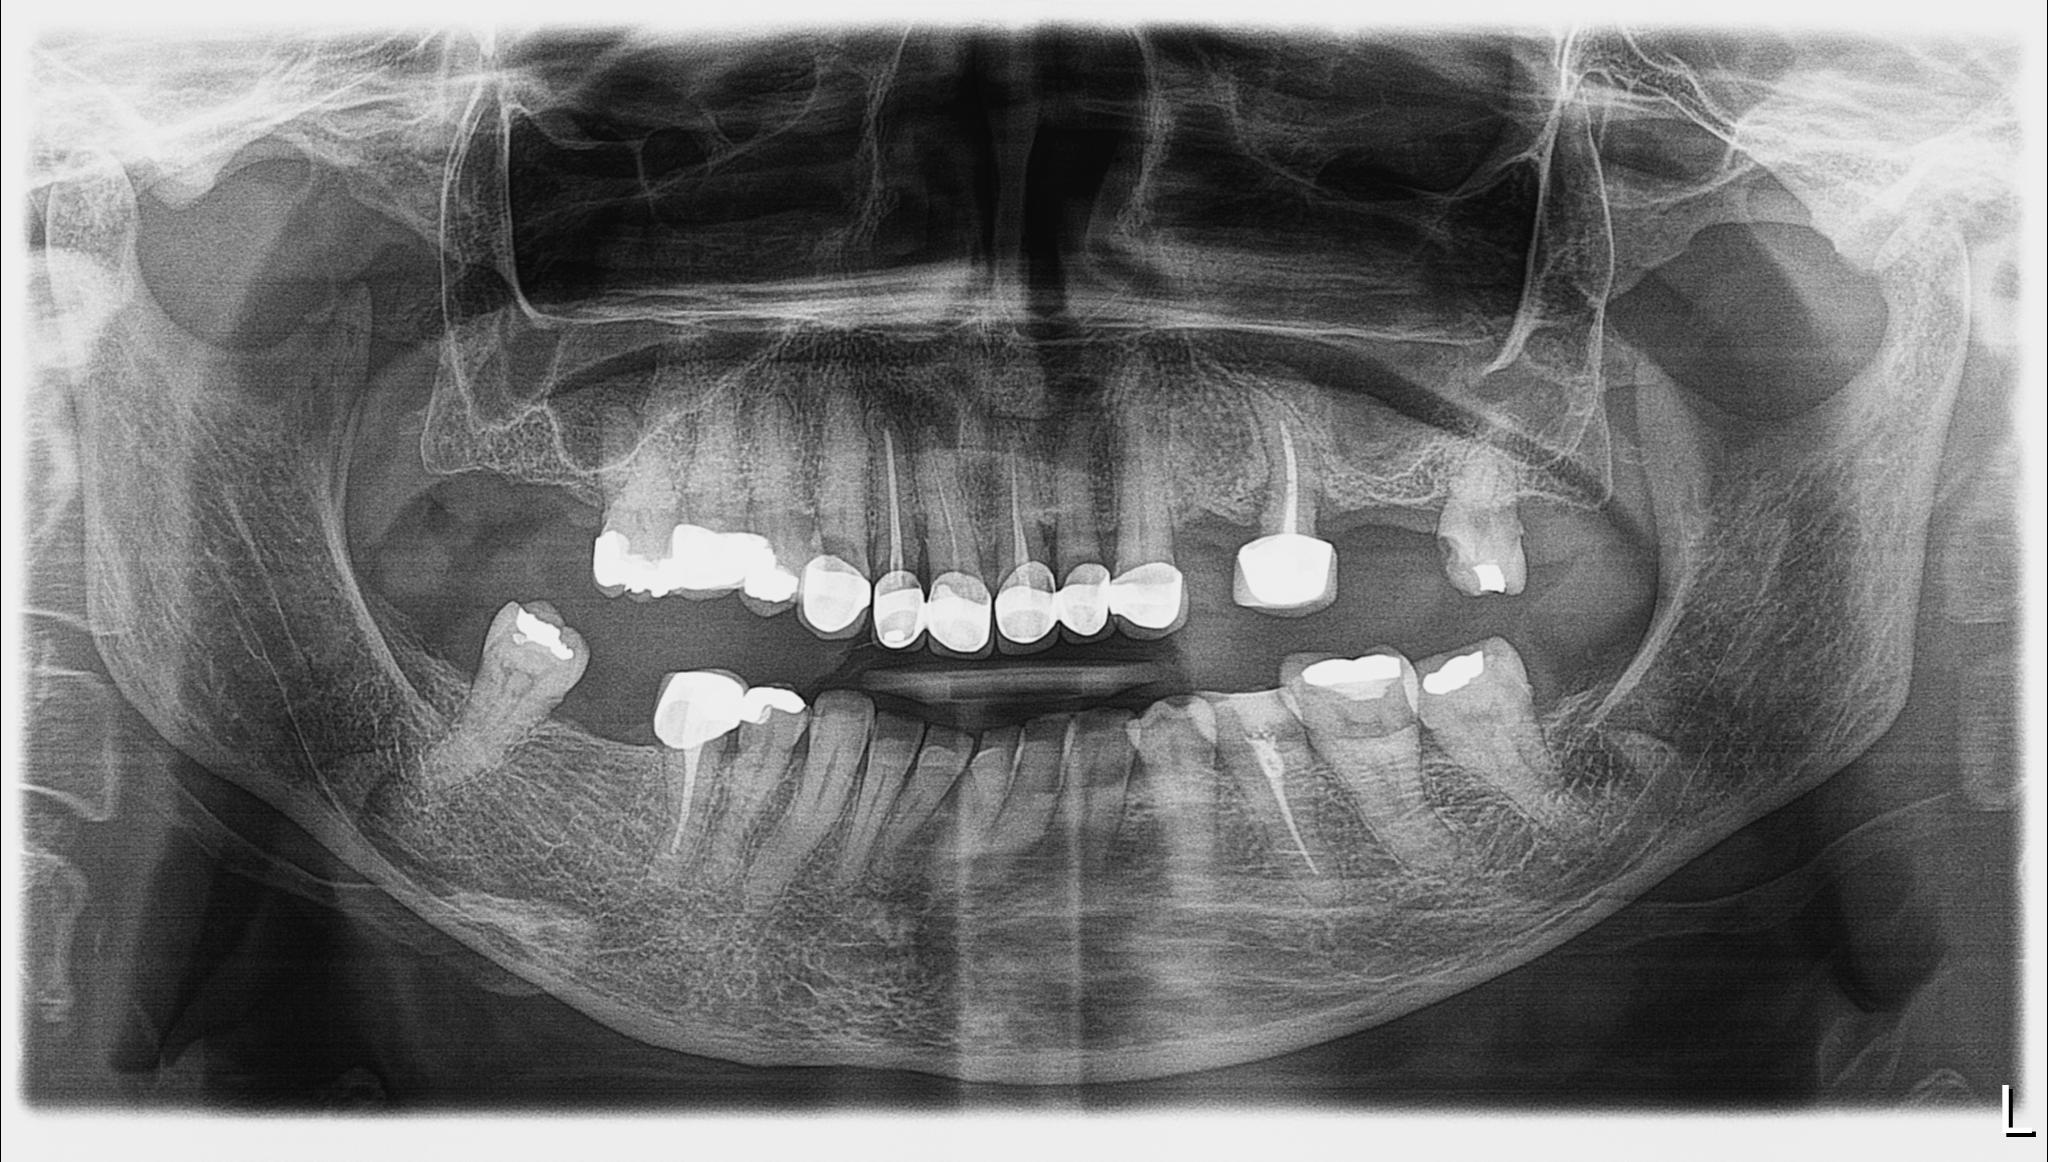 Πανοραμική ακτινογραφία με την αρχική κατάσταση της ασθενούς - Ενεργή περιοδοντική νόσος, τερηδονισμένα δόντια και κακότεχνες προσθετικές εργασίες